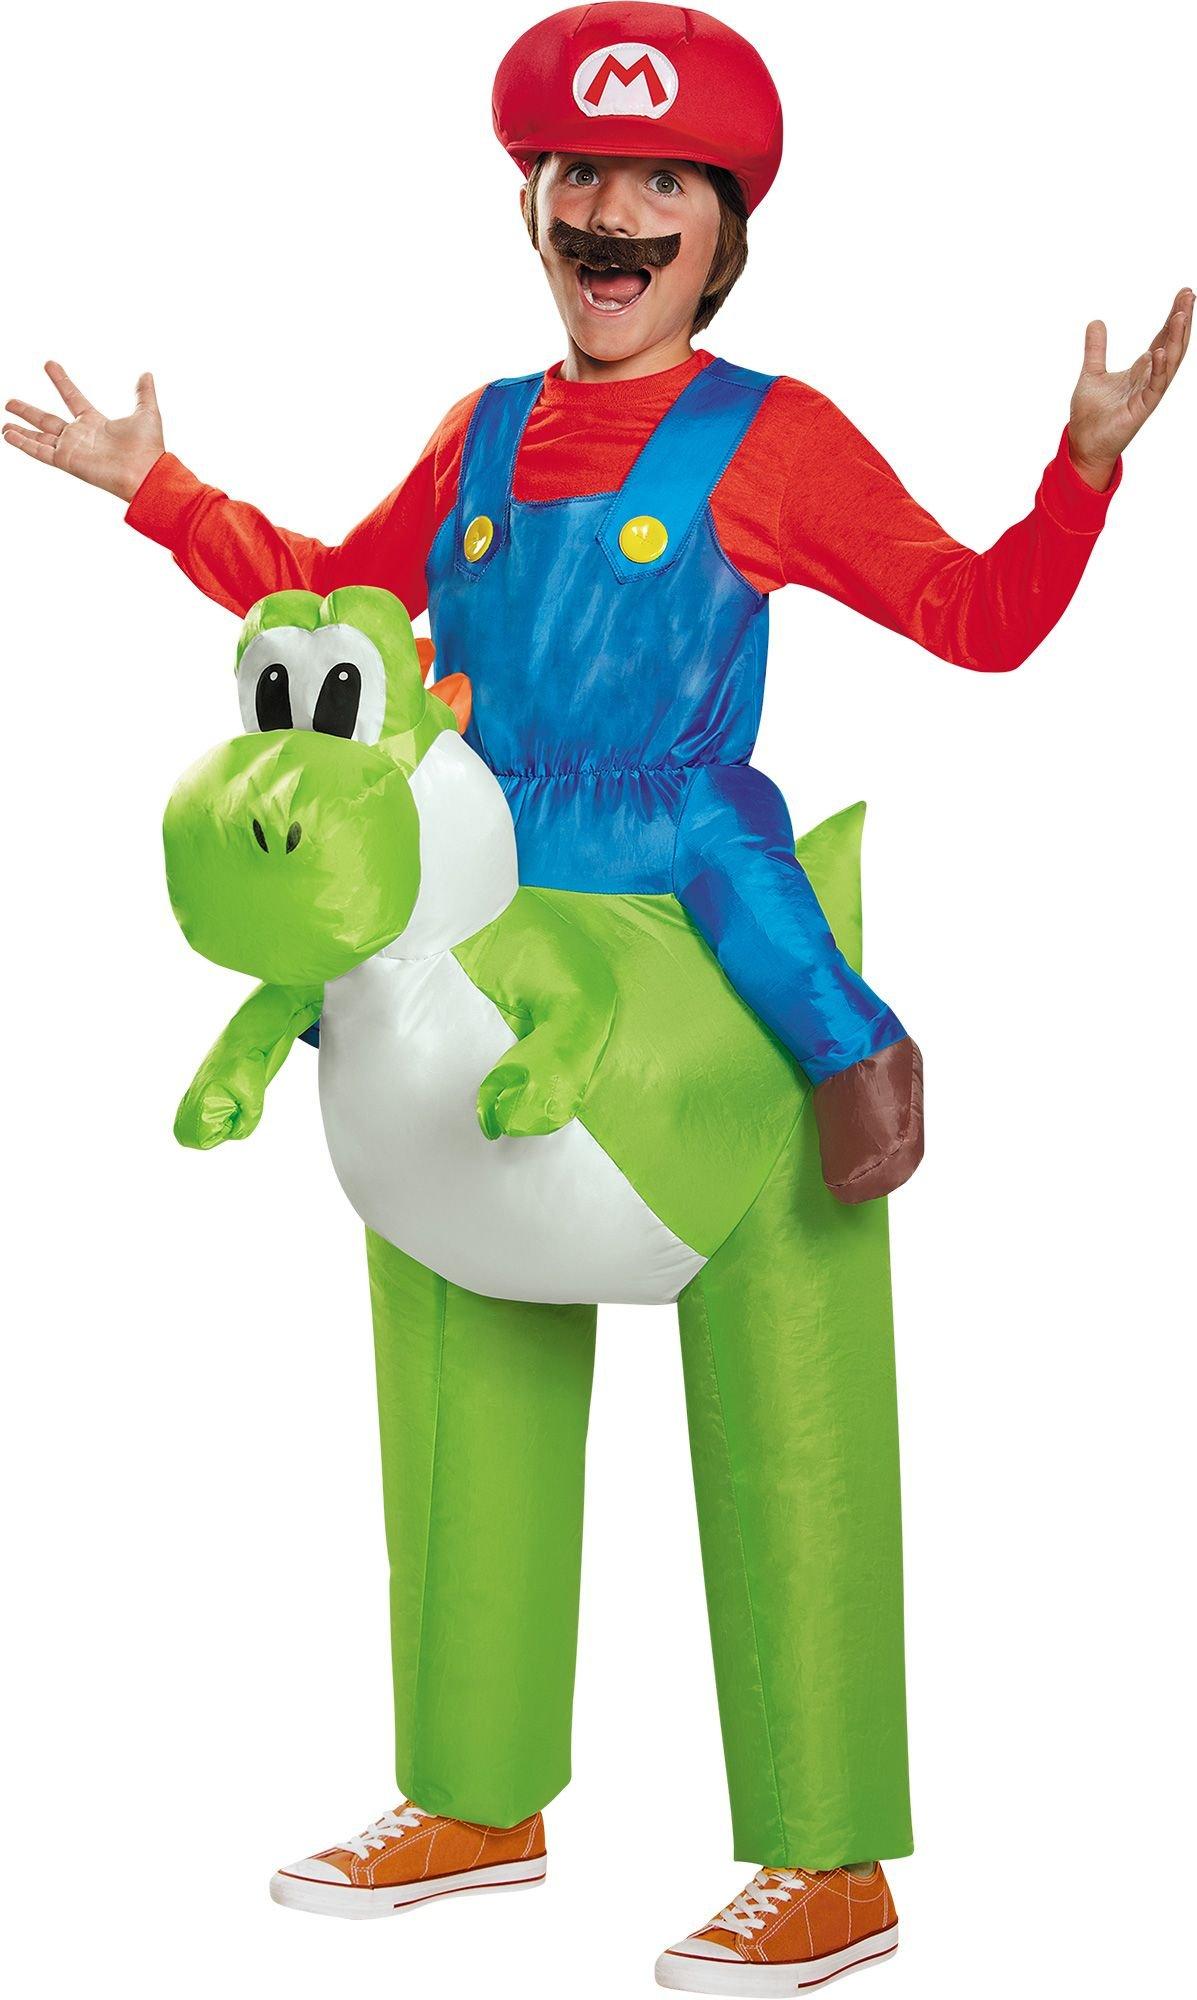 Mario & Luigi Costumes - Super Mario Costumes